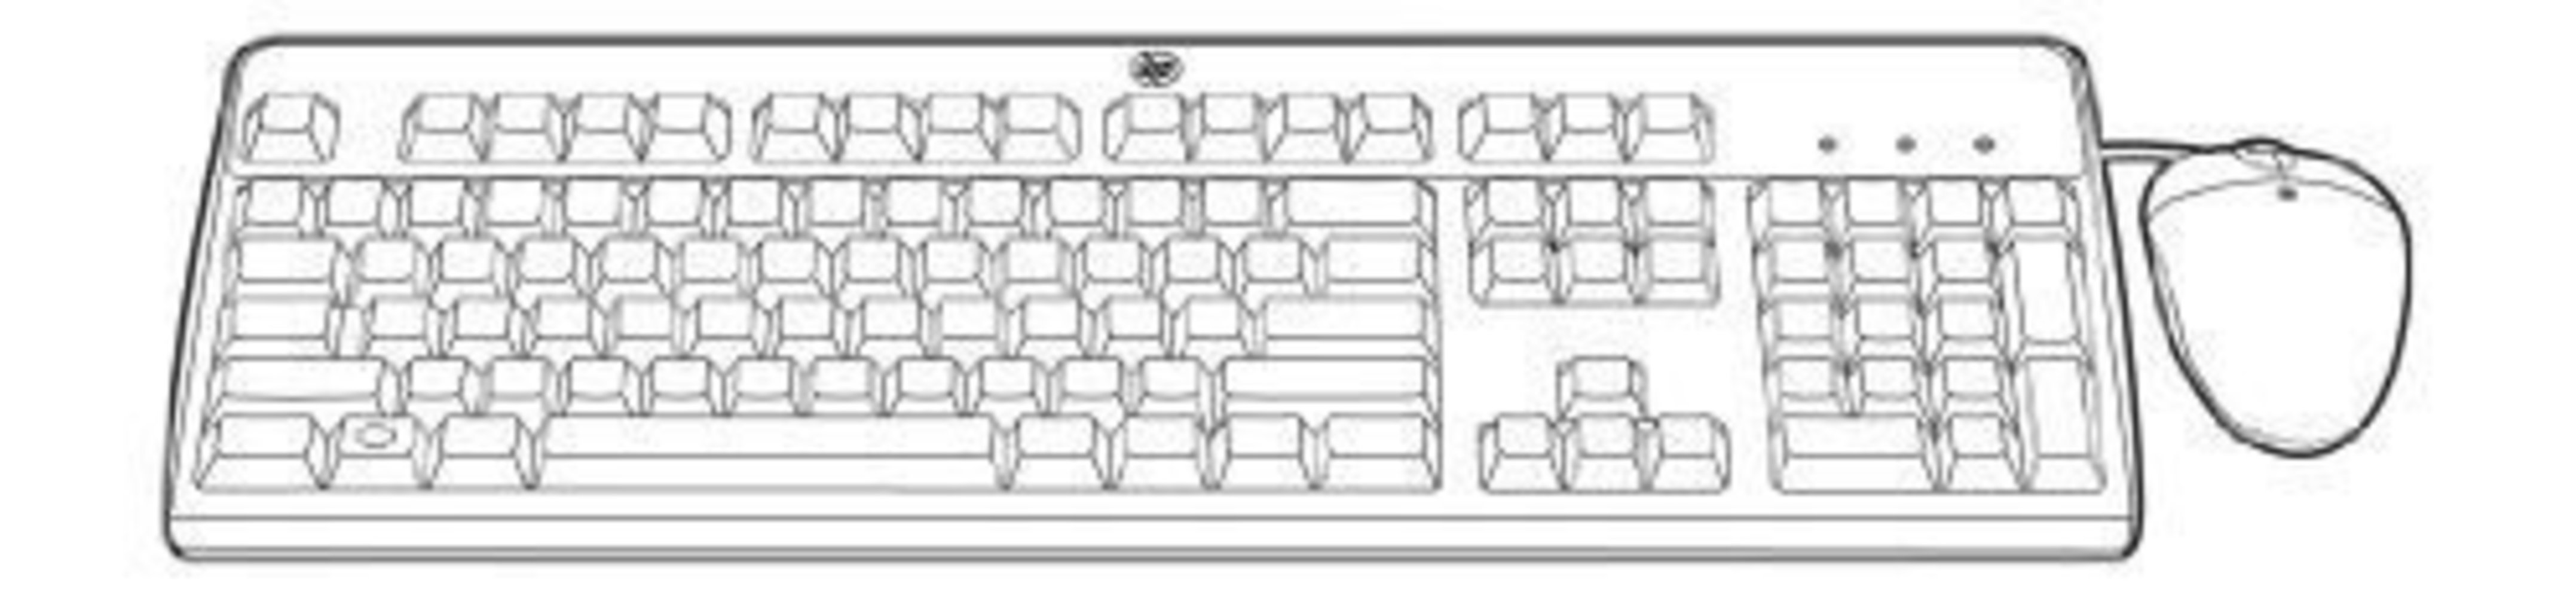 HPE USB BFR-PVC DE Keyboard/Maus Kit - Hochwertiges, langlebiges Tastatur- und Mausset für hohe Produktivität